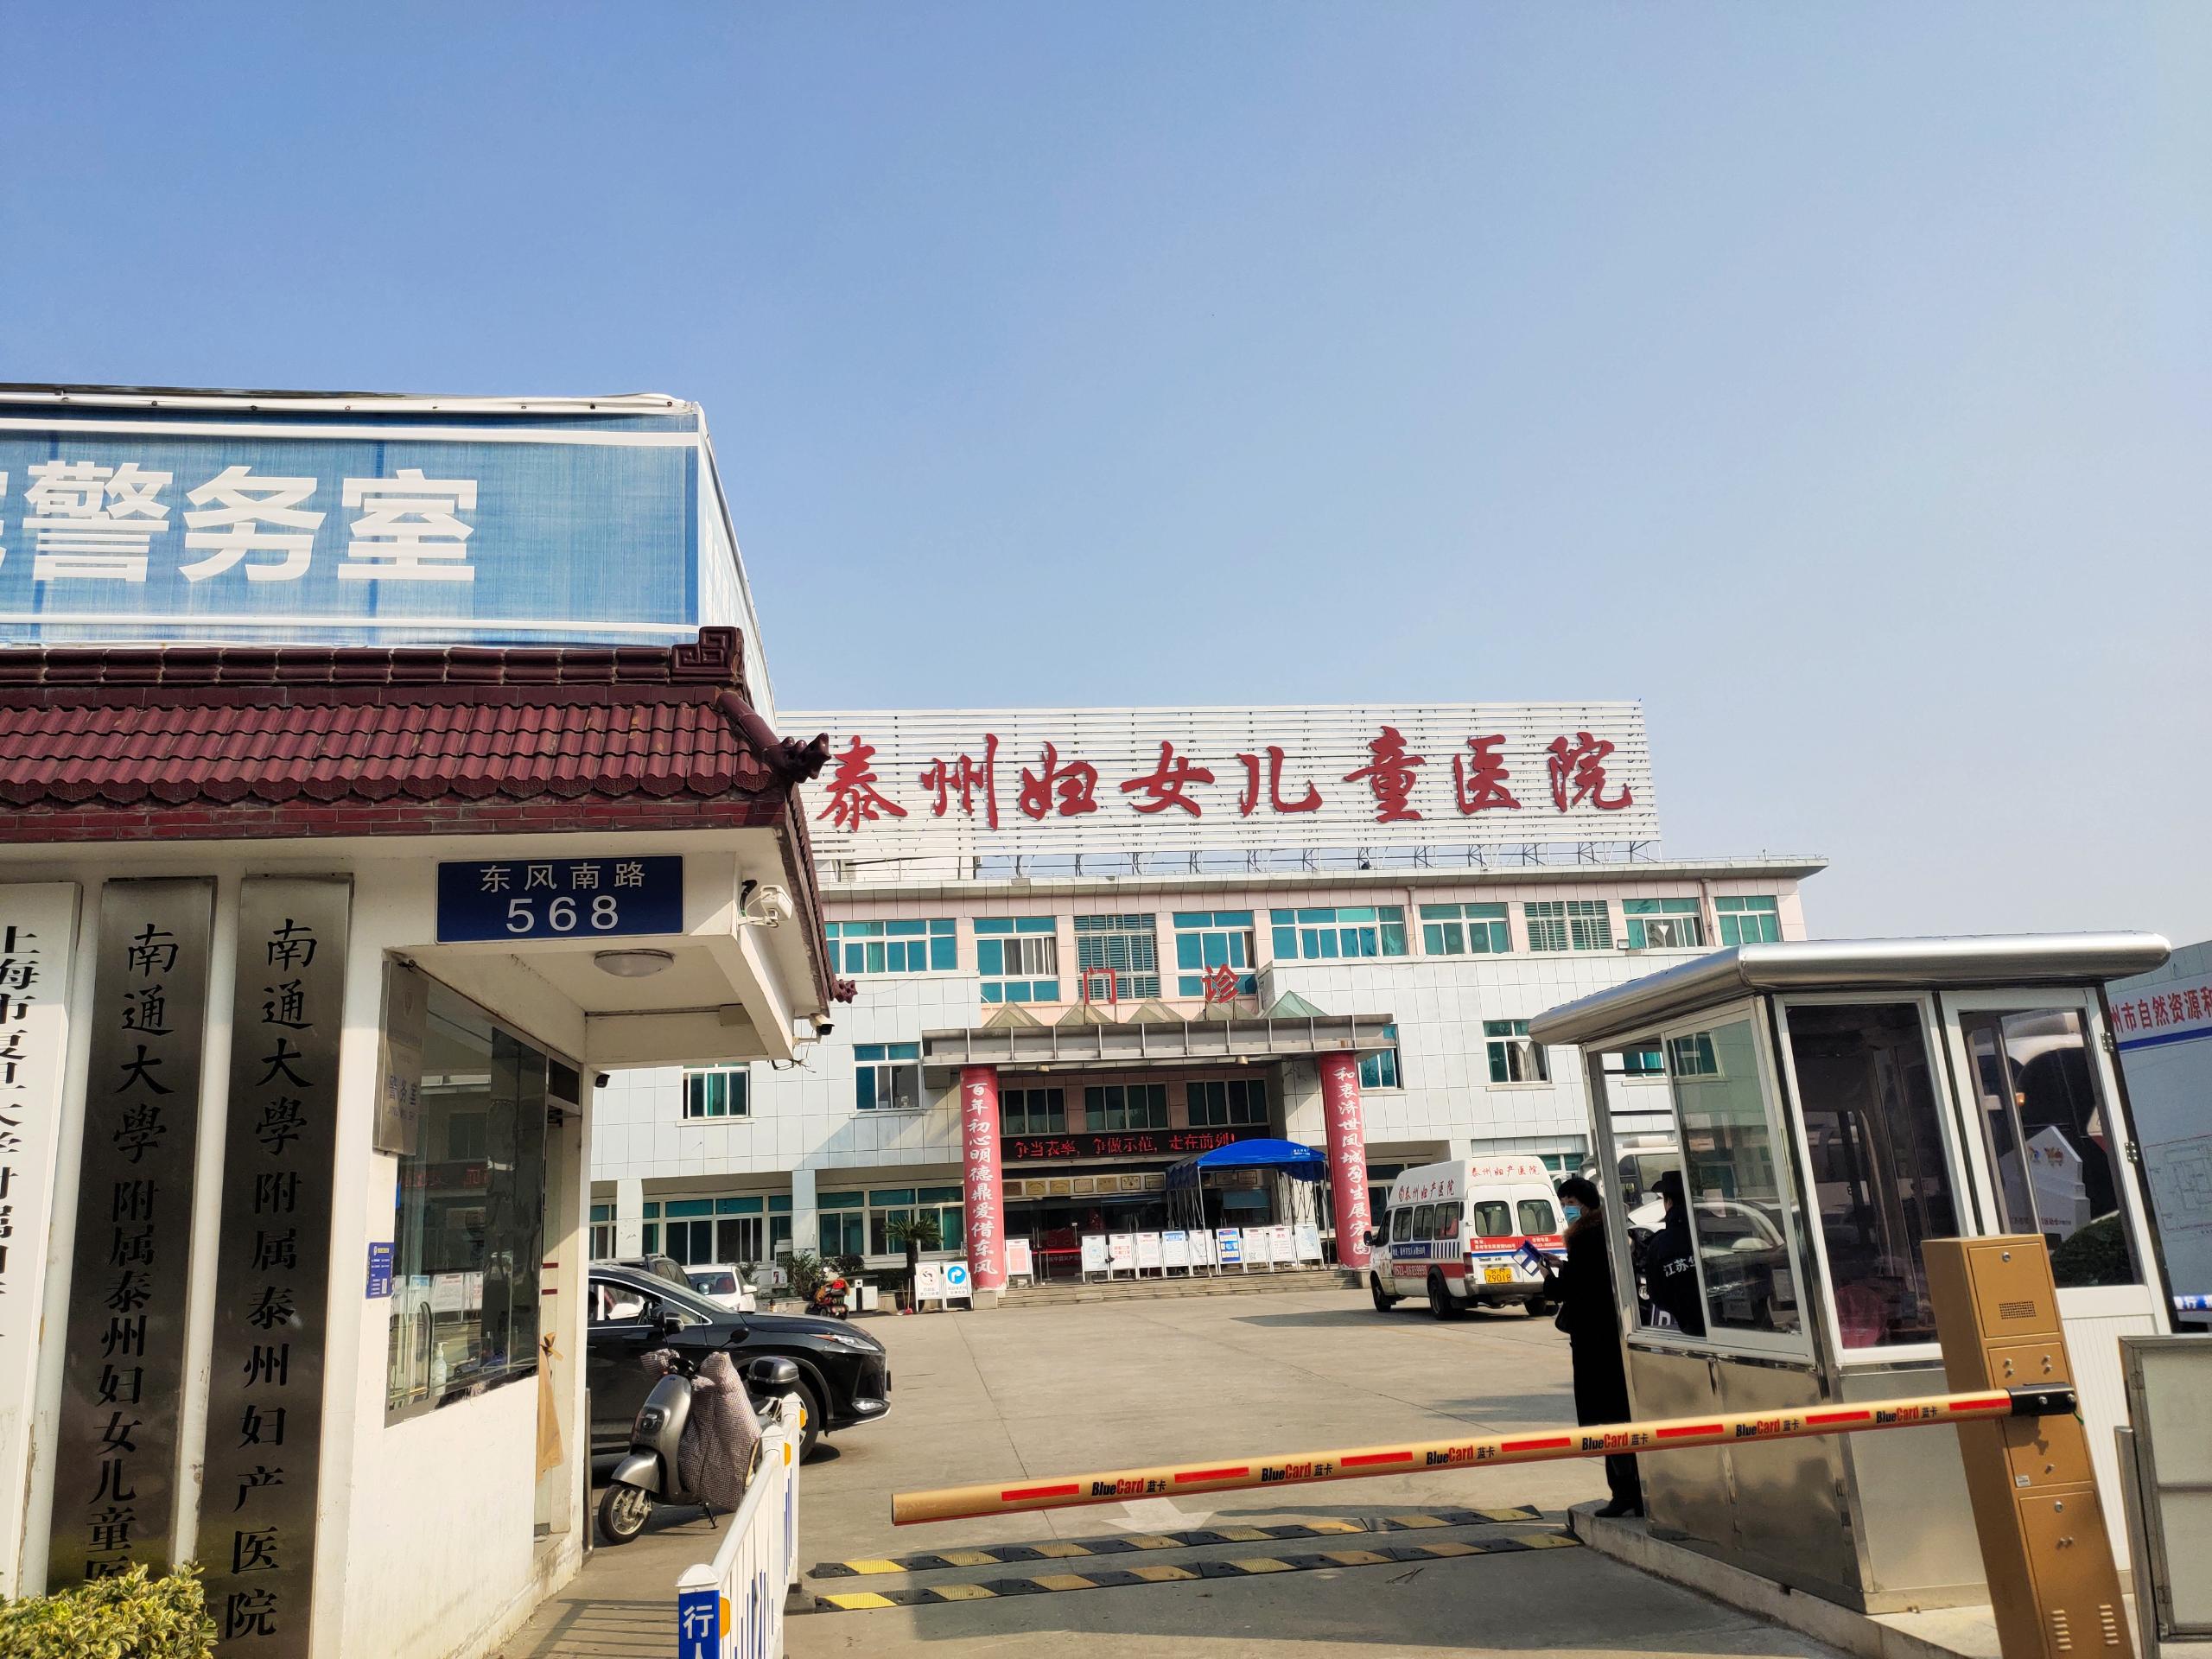 超声人乳分析仪厂家于11月在江苏省泰州市妇女儿童医院成功安装人乳分析仪器